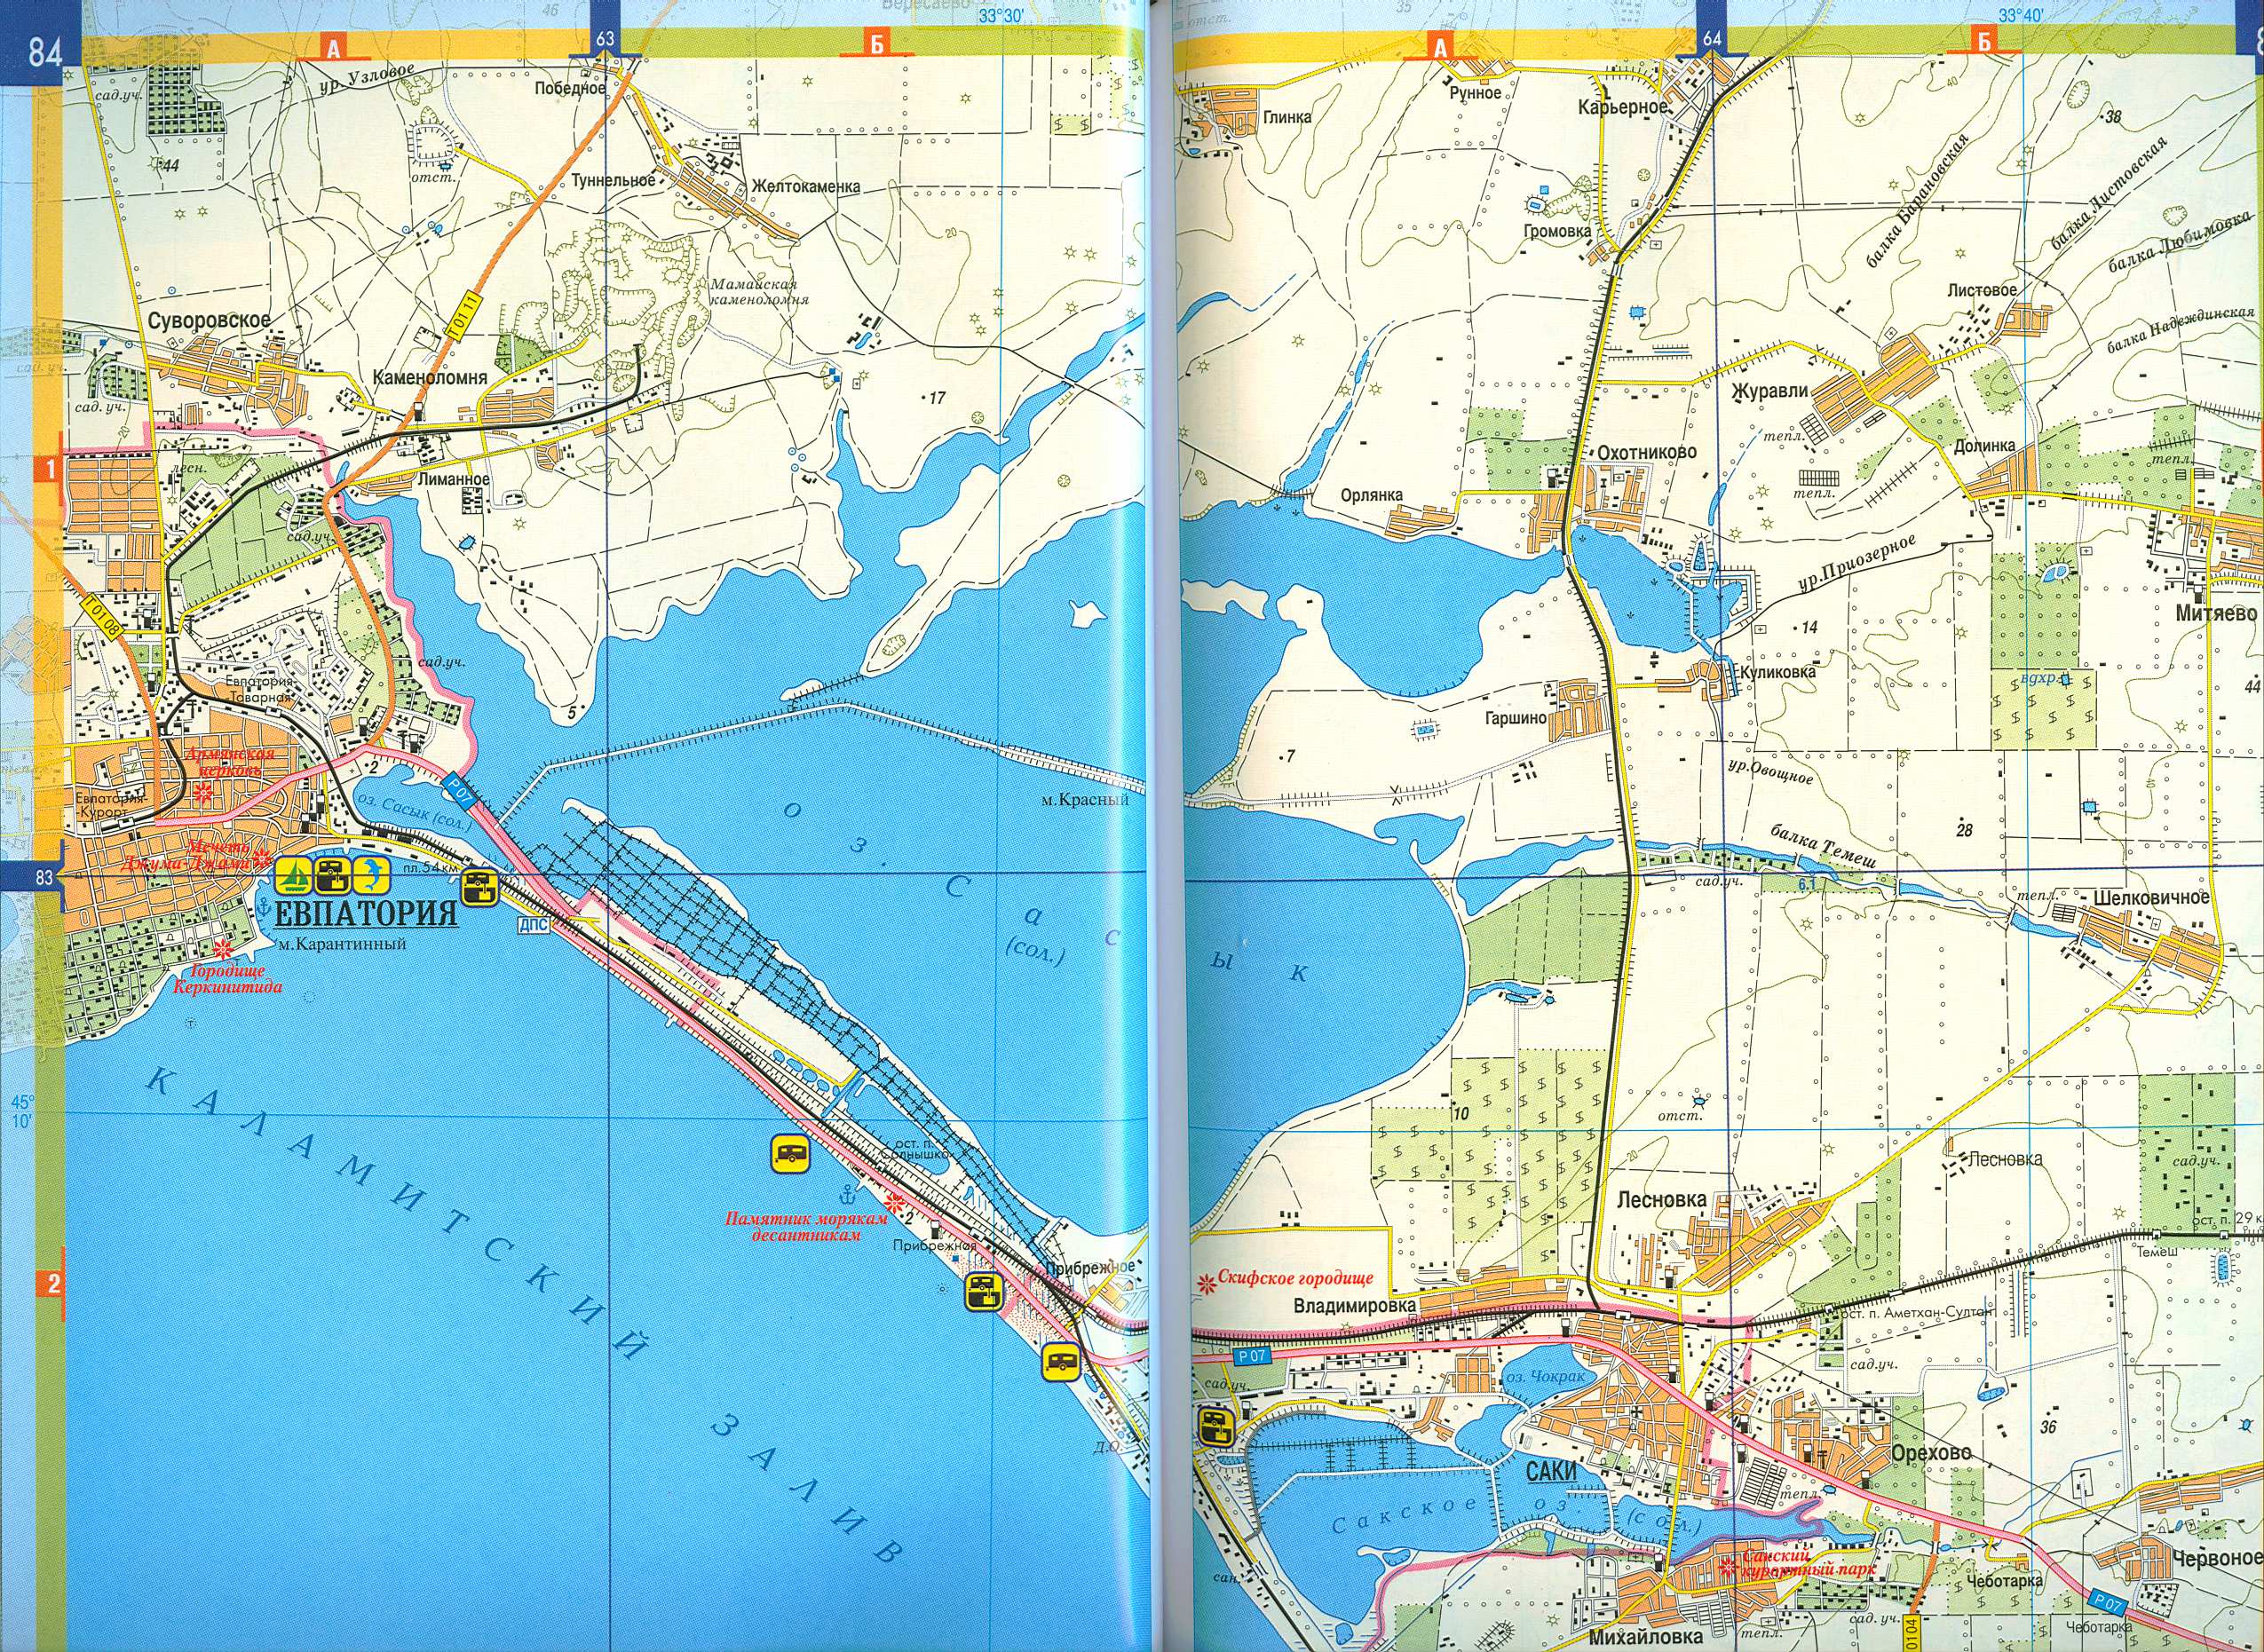 Black Sea coast of Crimea at the map of Yevpatoria. A detailed map of the Crimean Black Sea coast scale 1cm-1km, B0